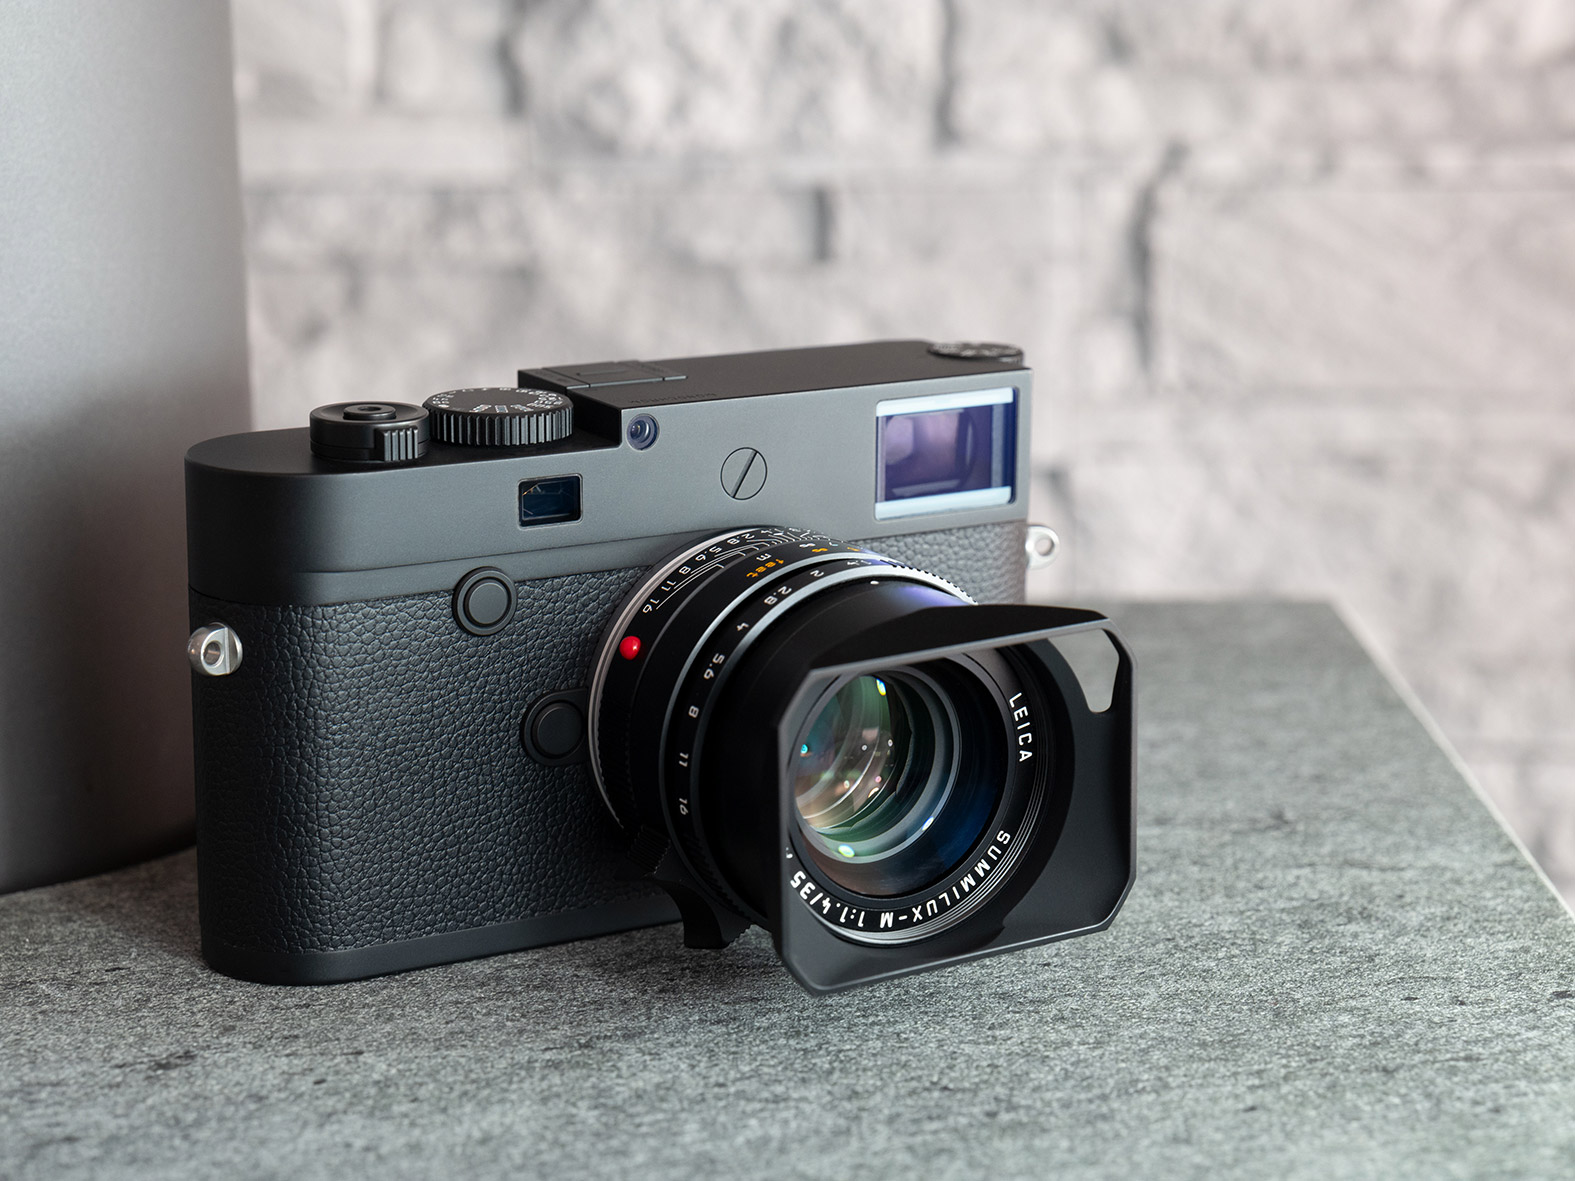  Leica M10 Monokromoa minimalismoaren funtsa da.  Zuri-beltzeko argazkiak bakarrik ateratzen ditu
